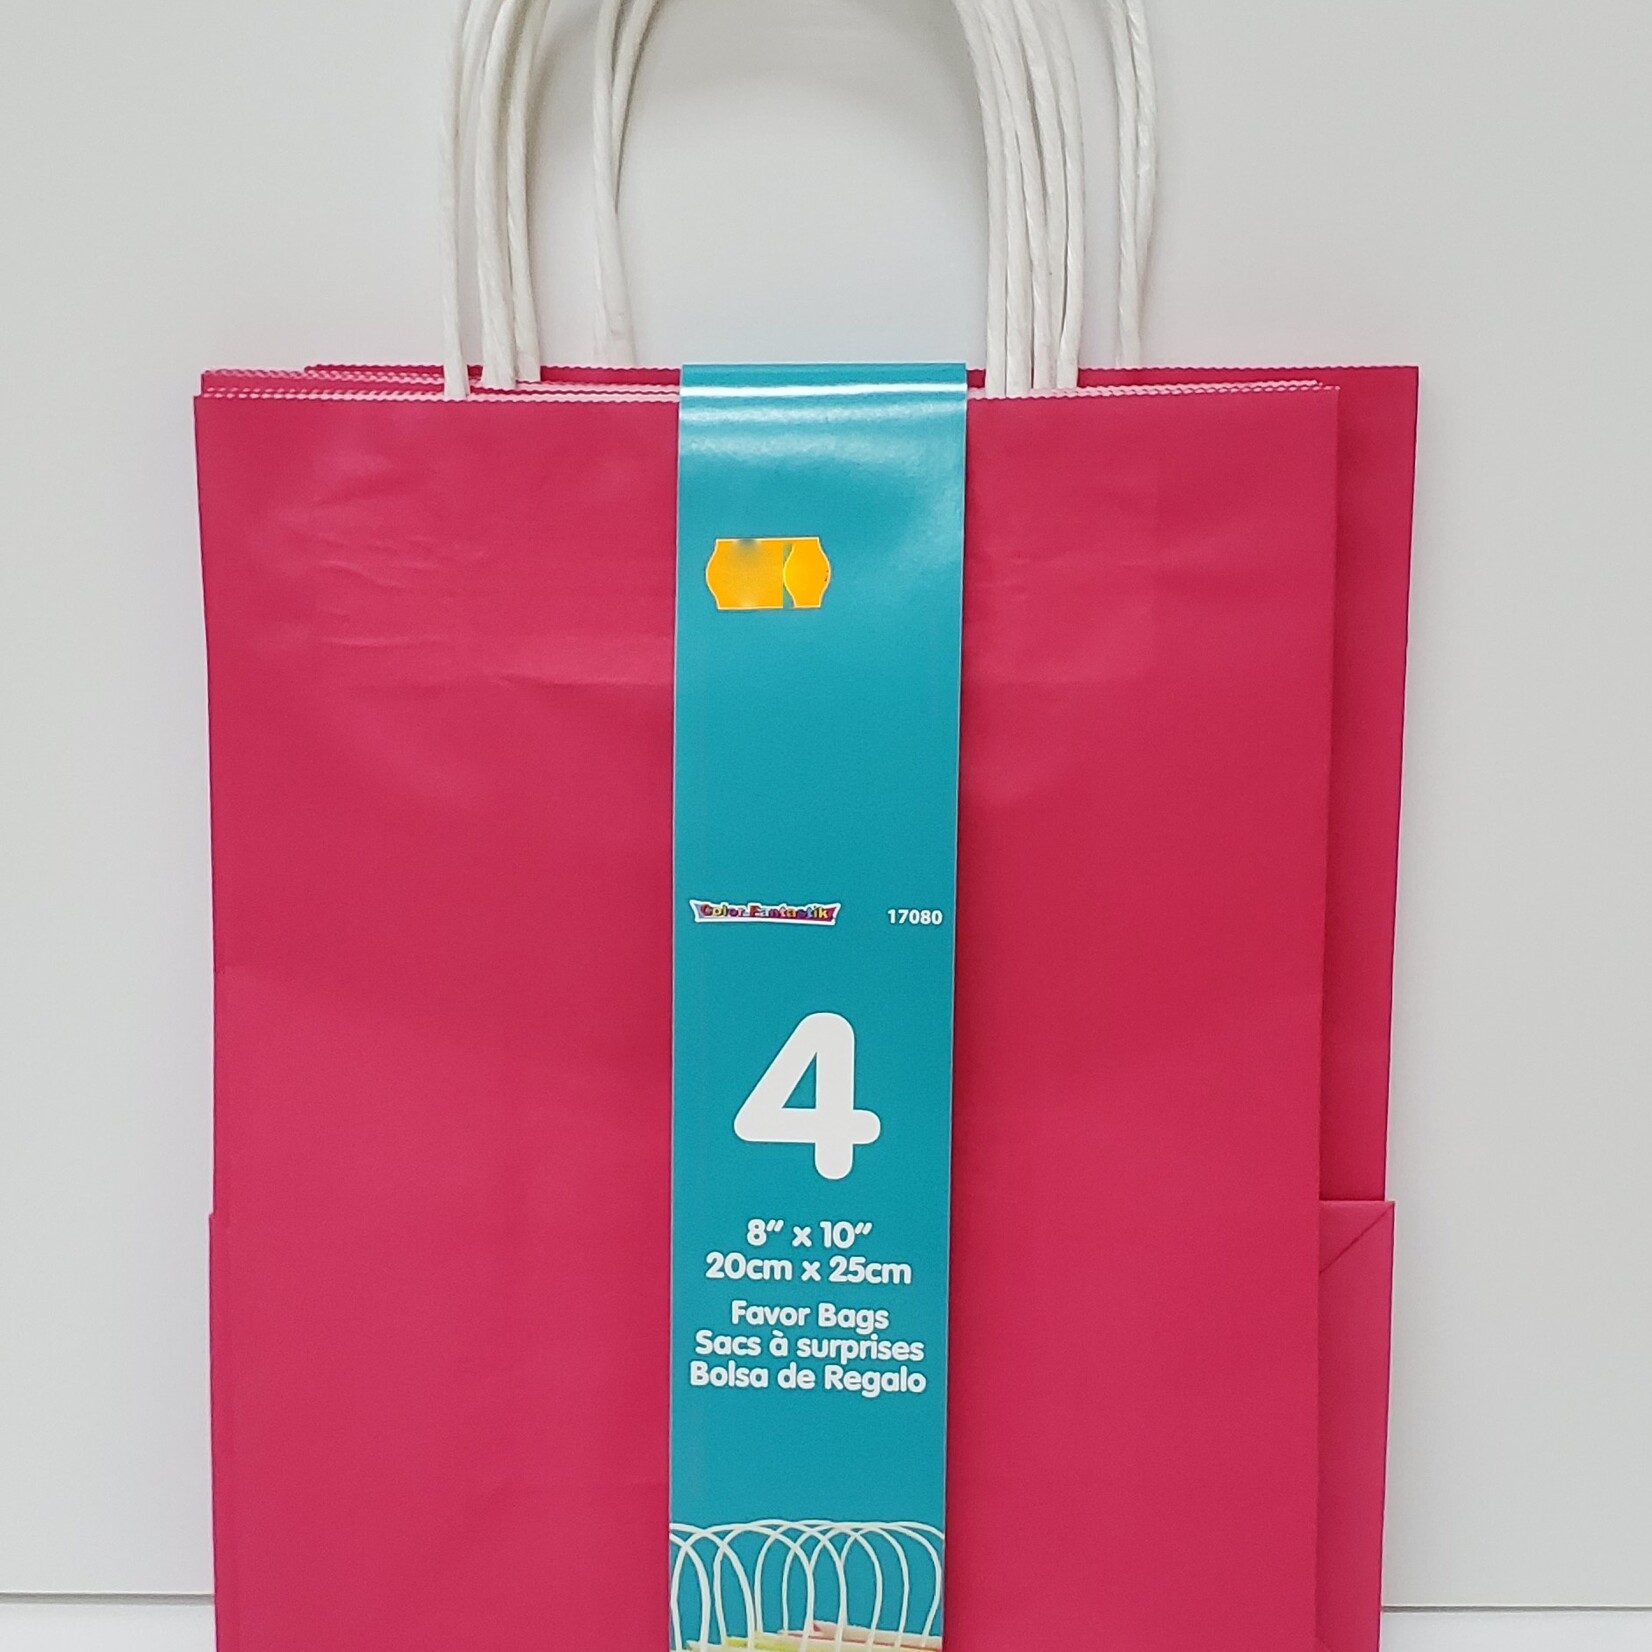 Kraft Favor Bags  4CT (8"x10")